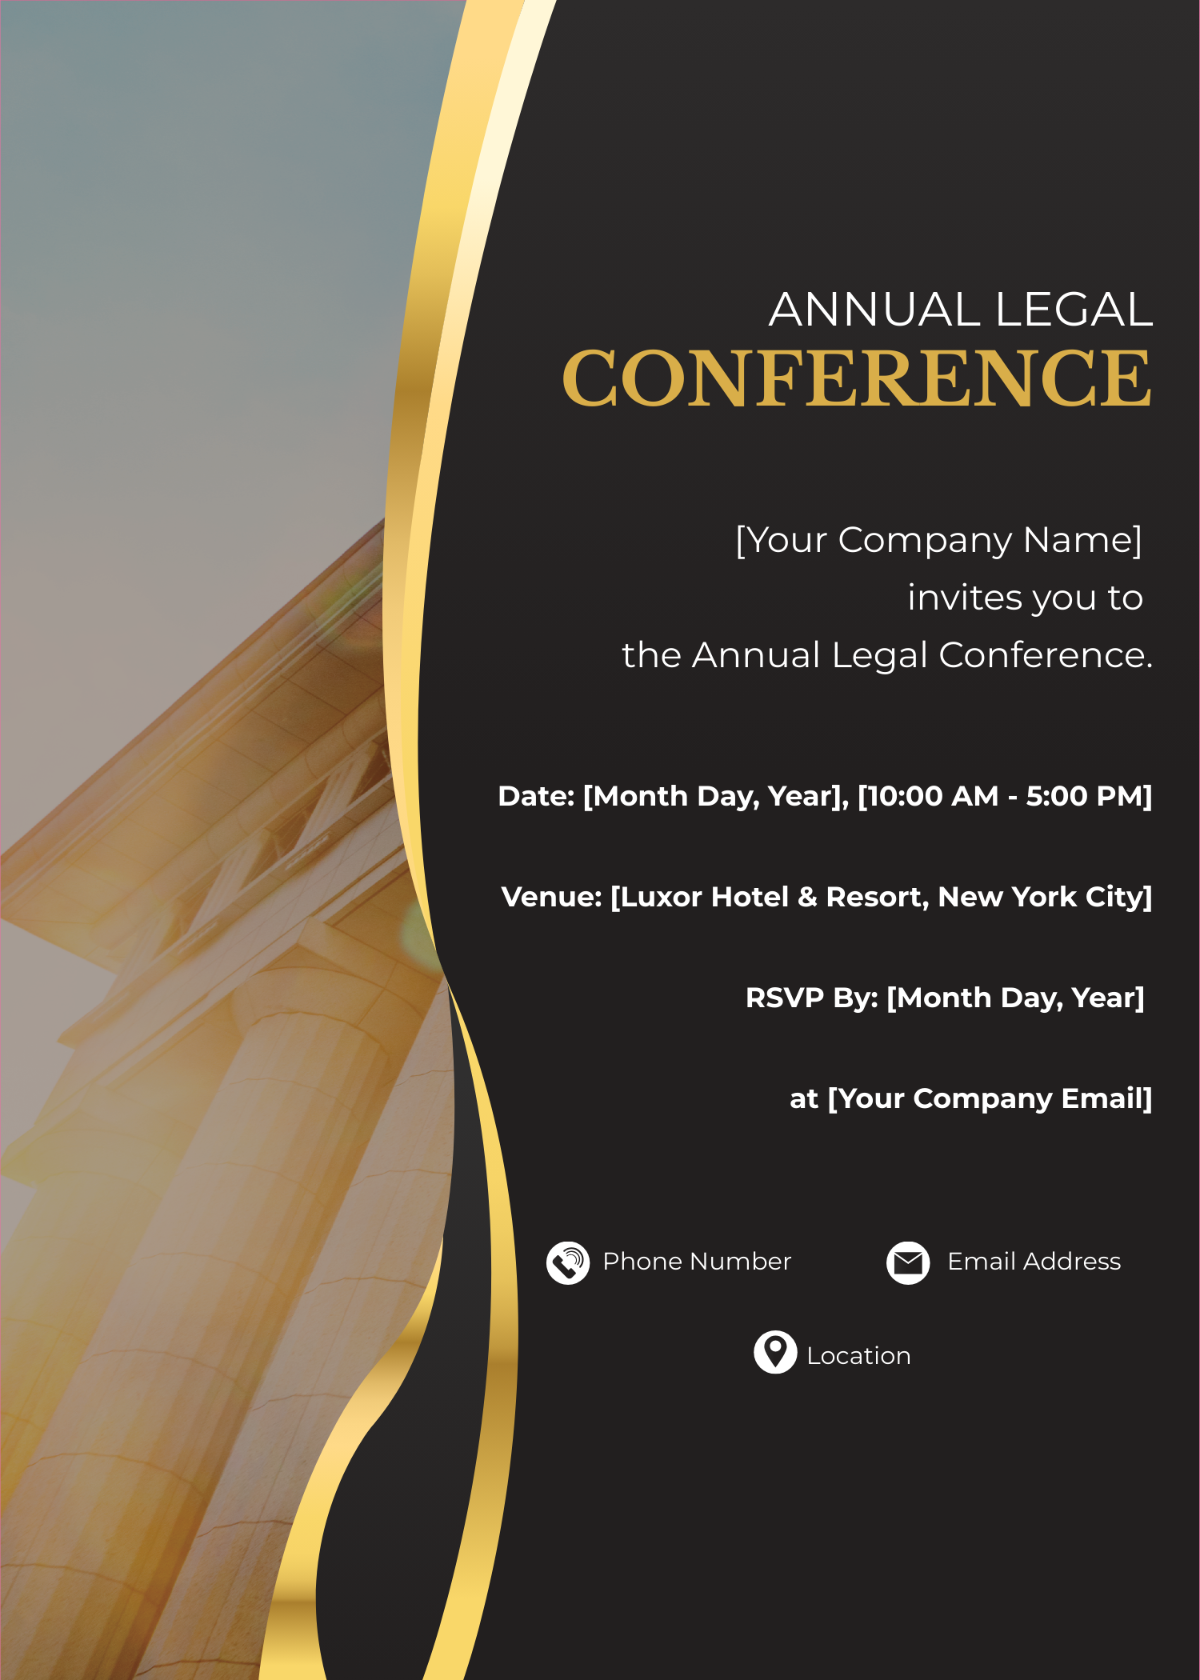 Annual Legal Conference Invitation Card